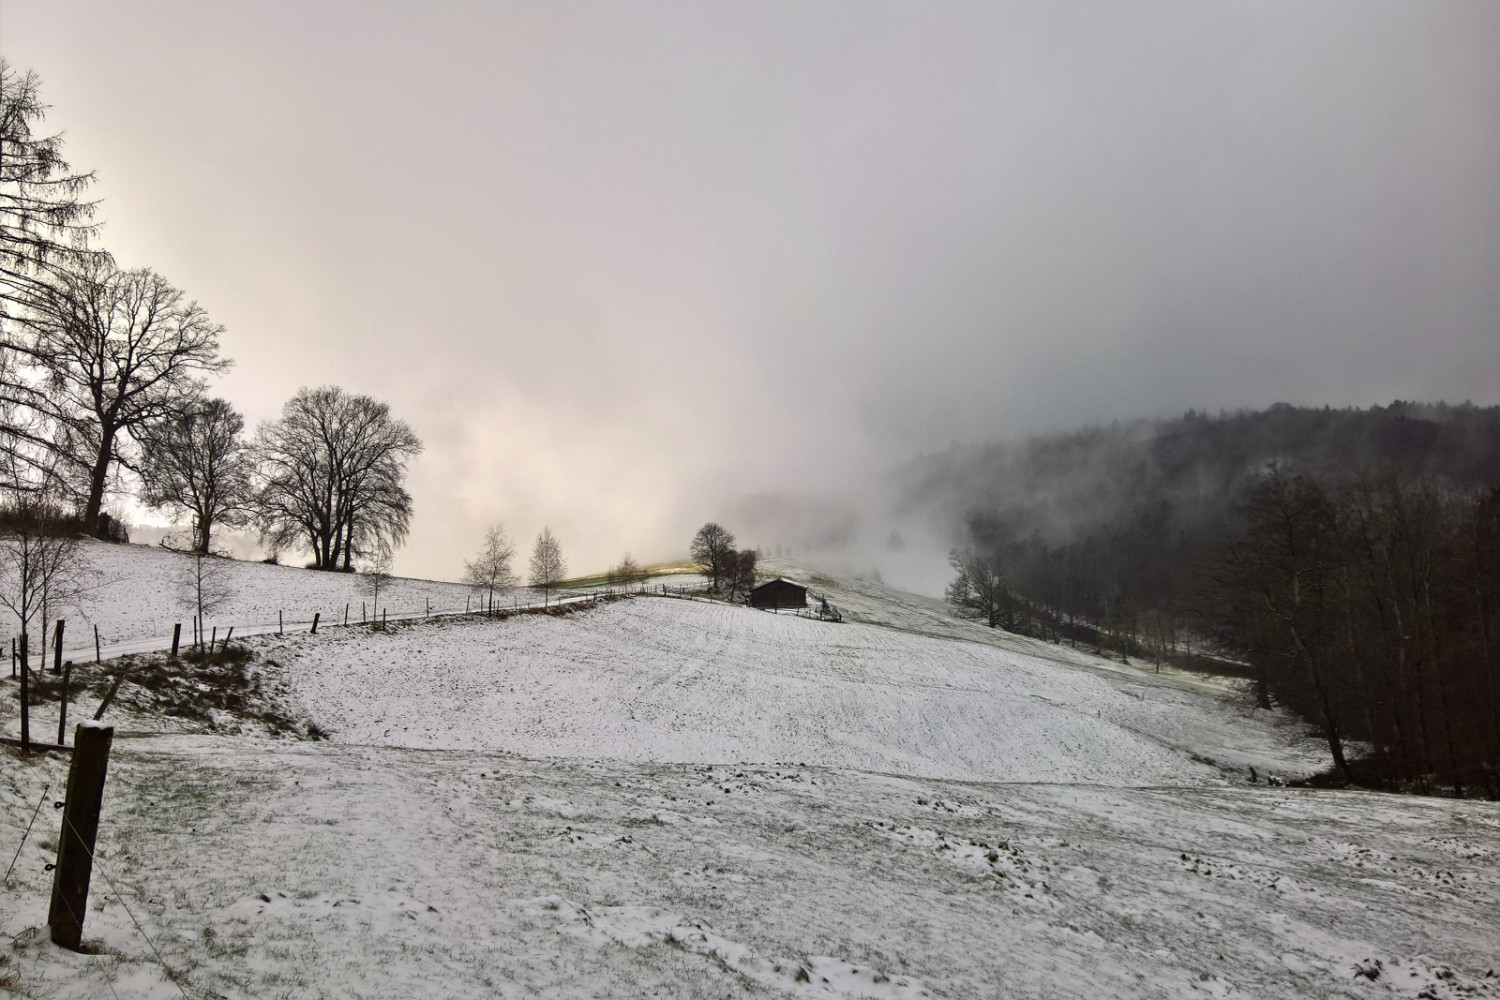 Quelques centimètres de neige, et le paysage change d’apparence. Photo: Andreas Staeger.